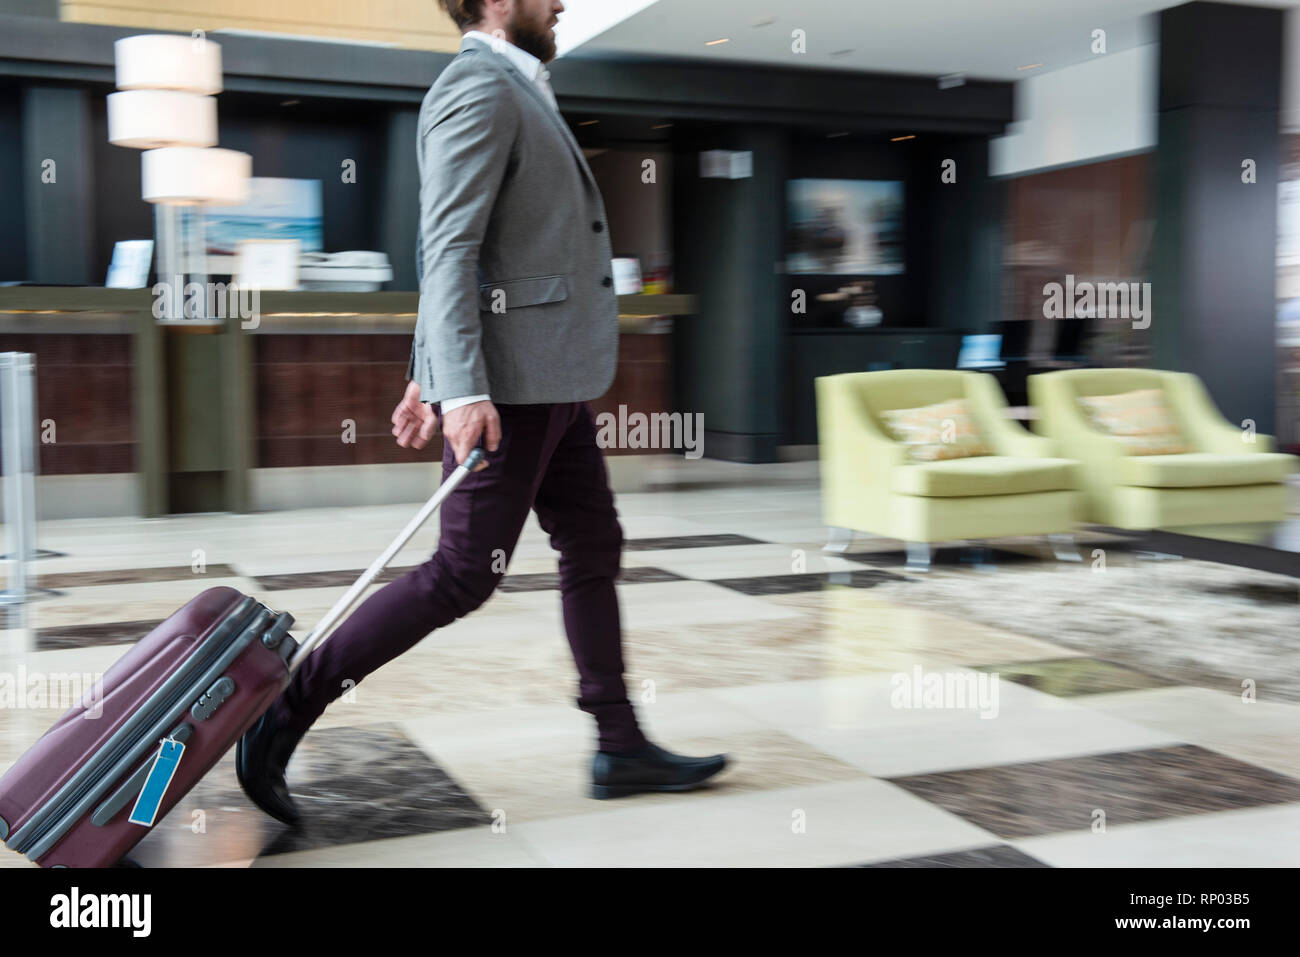 Businessman walking with wheeled luggage Stock Photo